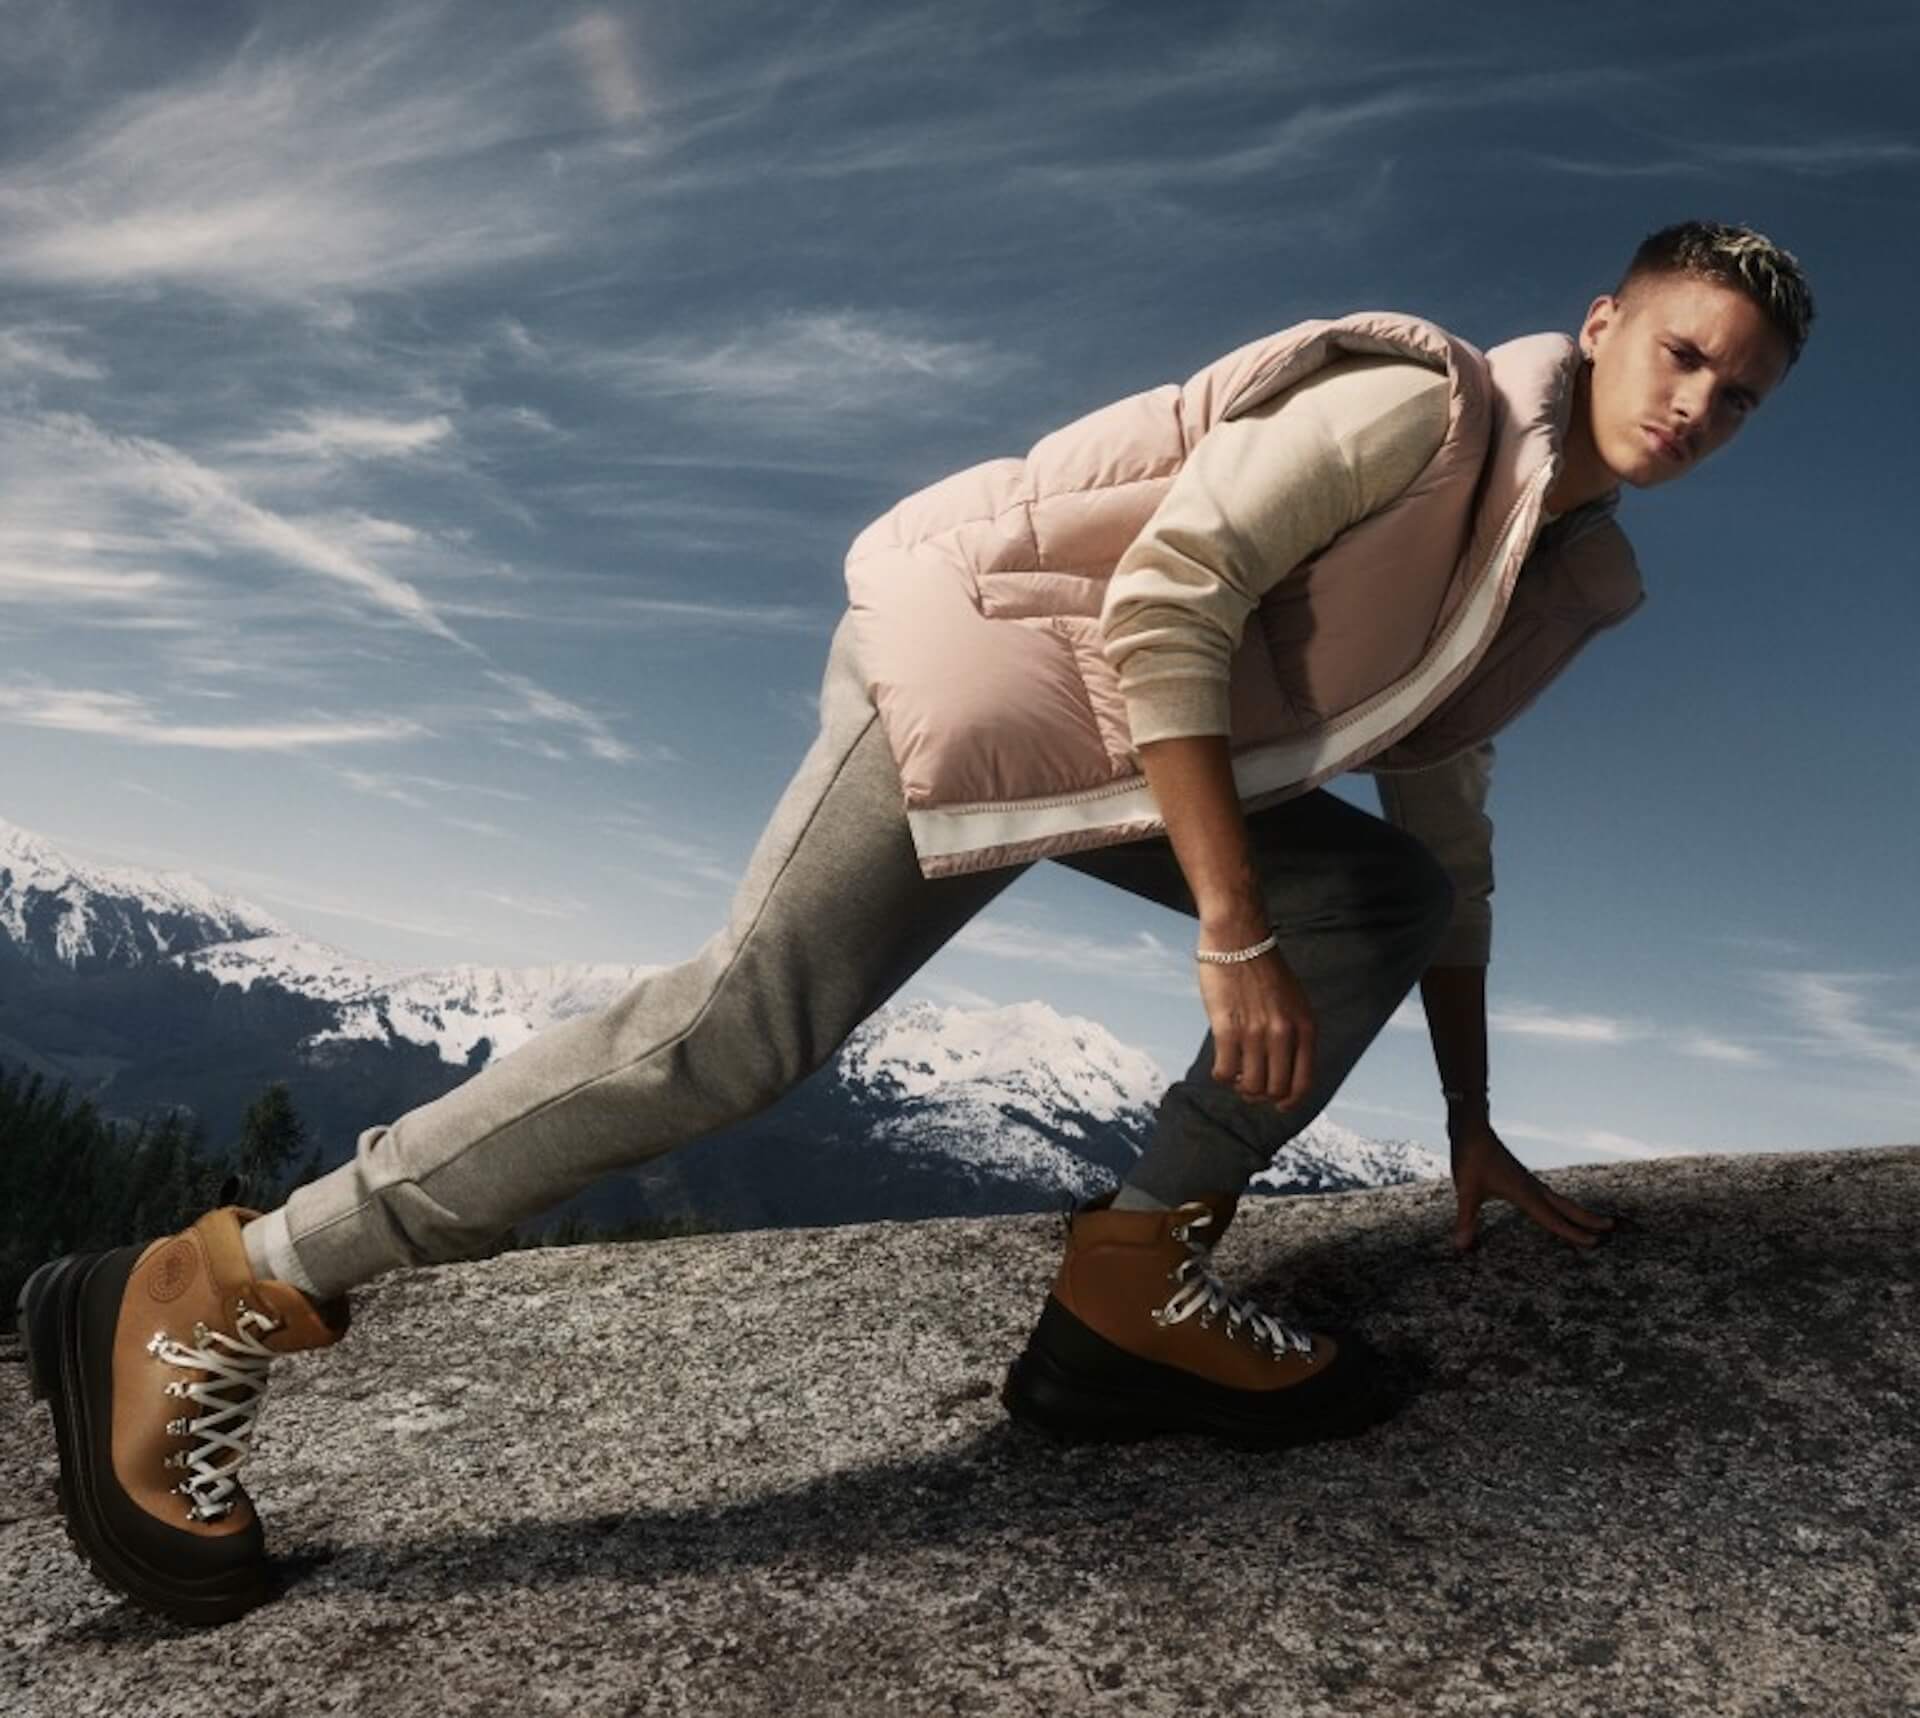 CANADA GOOSE初のフットウェア「JOURNEY BOOT」が登場！高機能・防水のブーツが発売 fashion220121_canadagoose-04